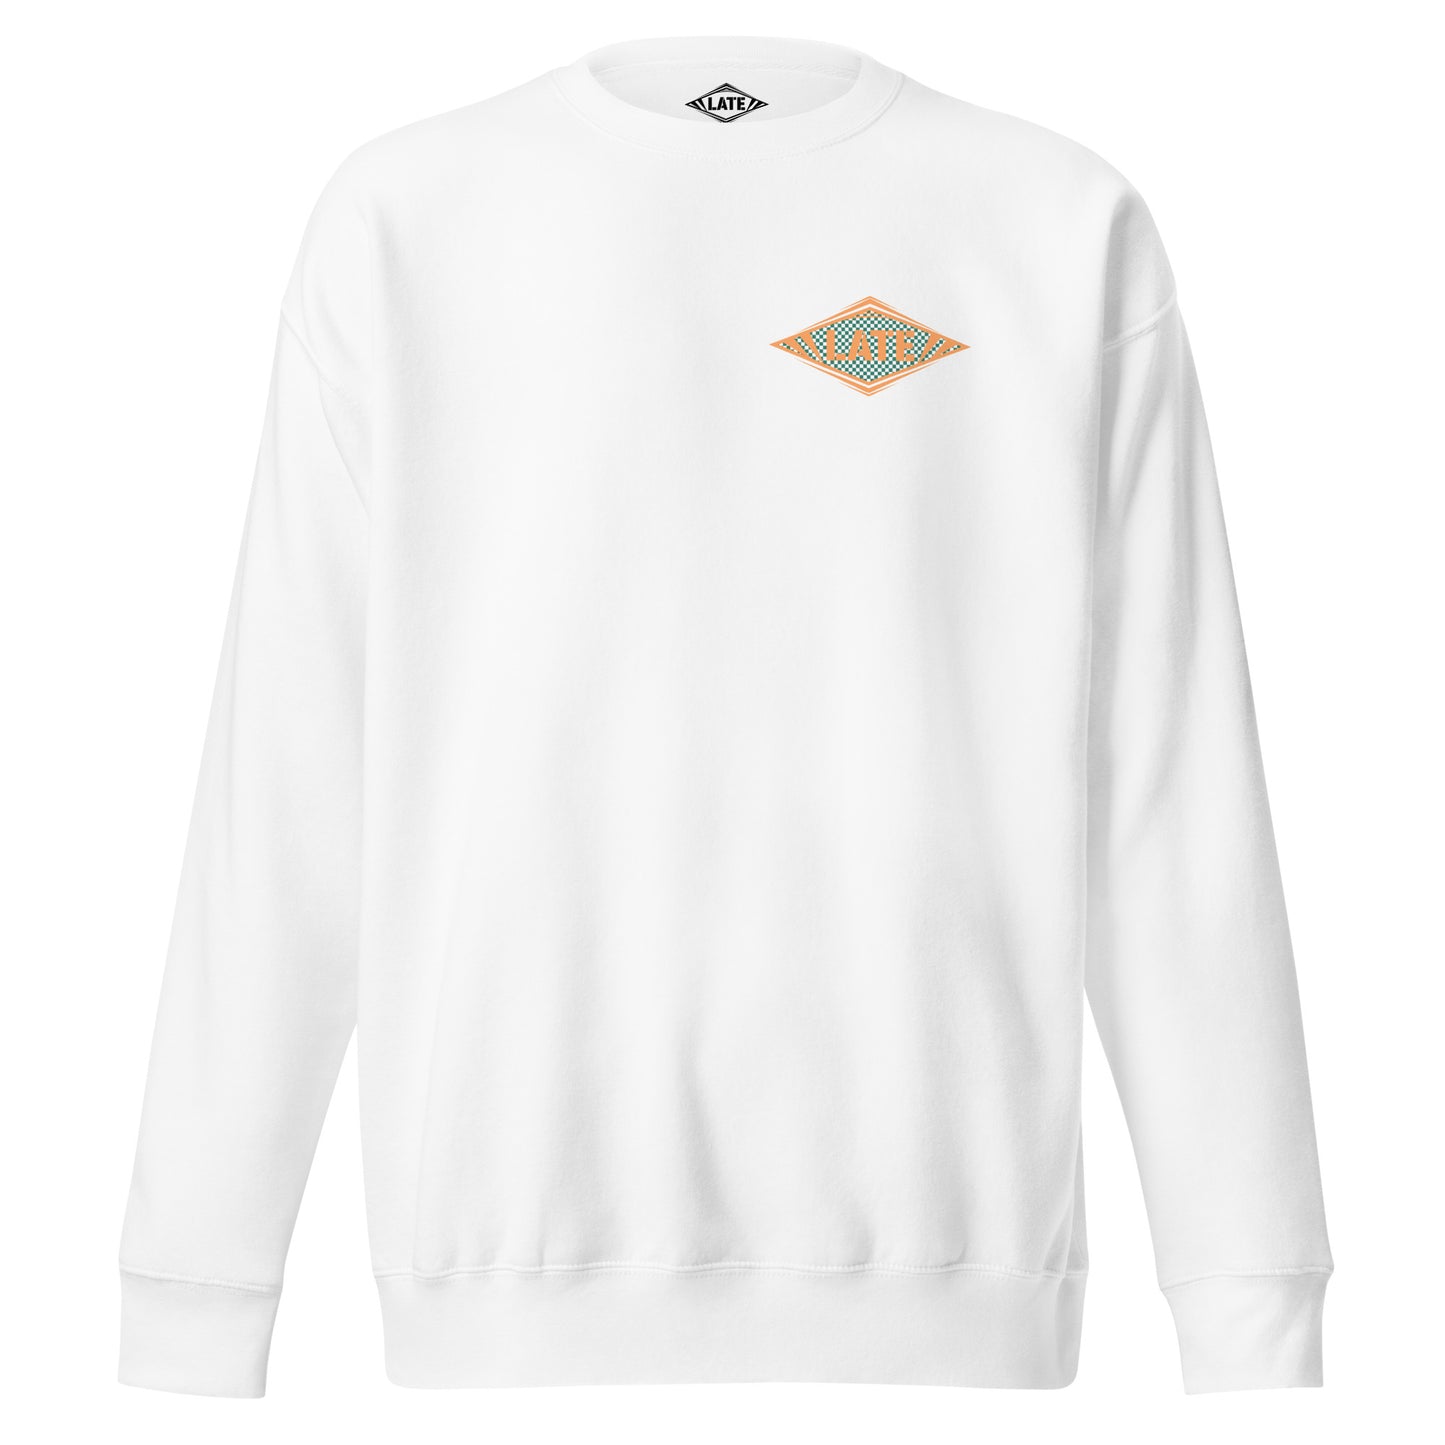 Sweatshirt Shred It logo Late à carreaux style Vans skateboarding sweat-shirt unisex couleur blanc